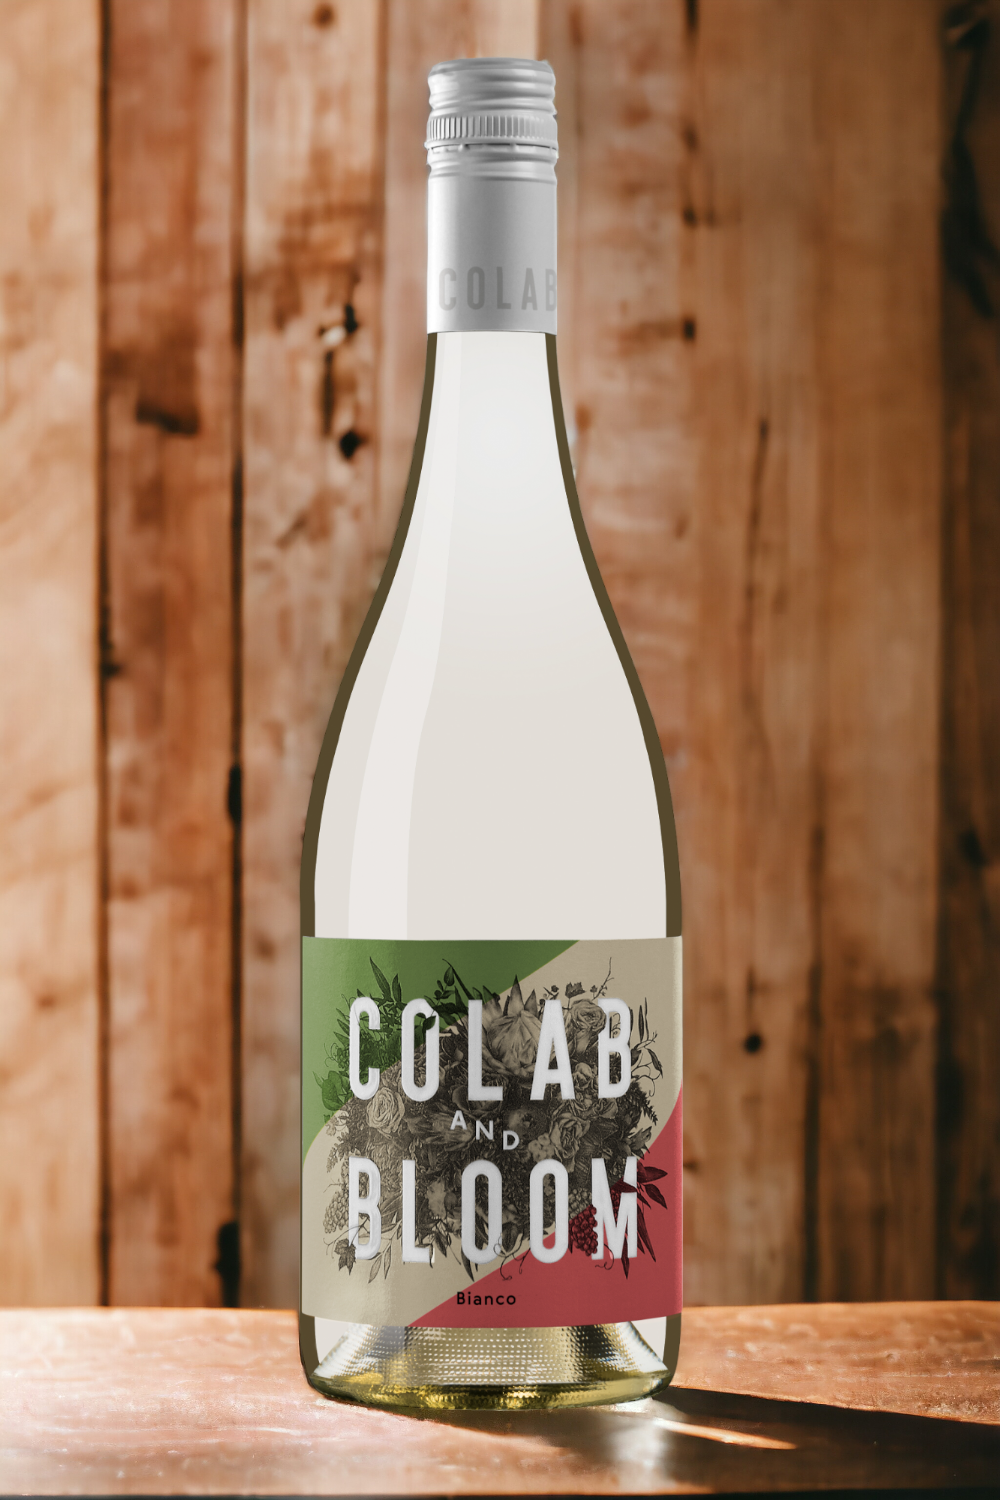 Colab & Bloom Bianco 2022 (6 per case)